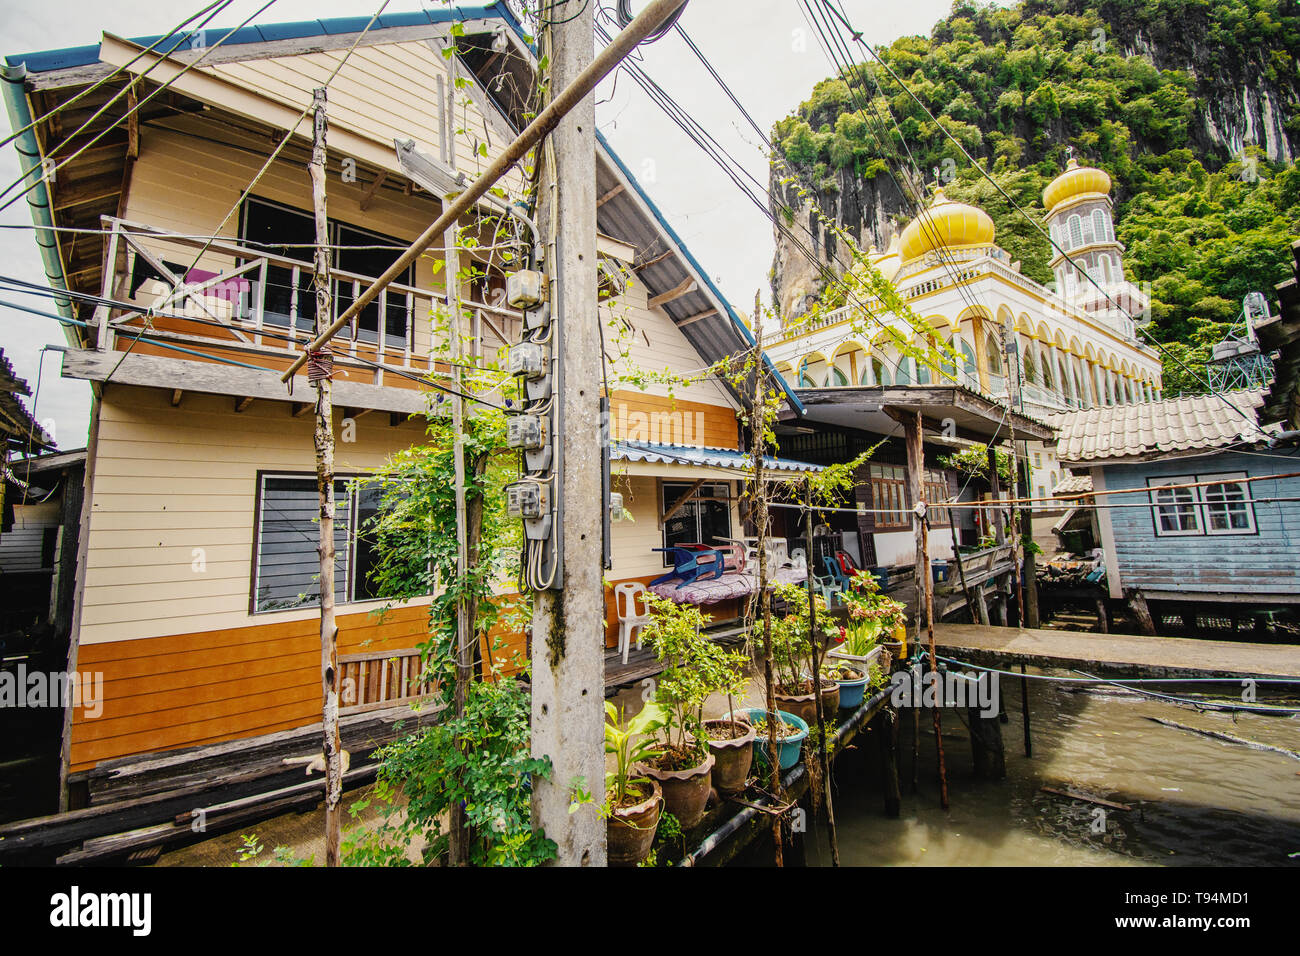 Insel in Bangkok wunderschöner Ort für Urlaub Stock Photo